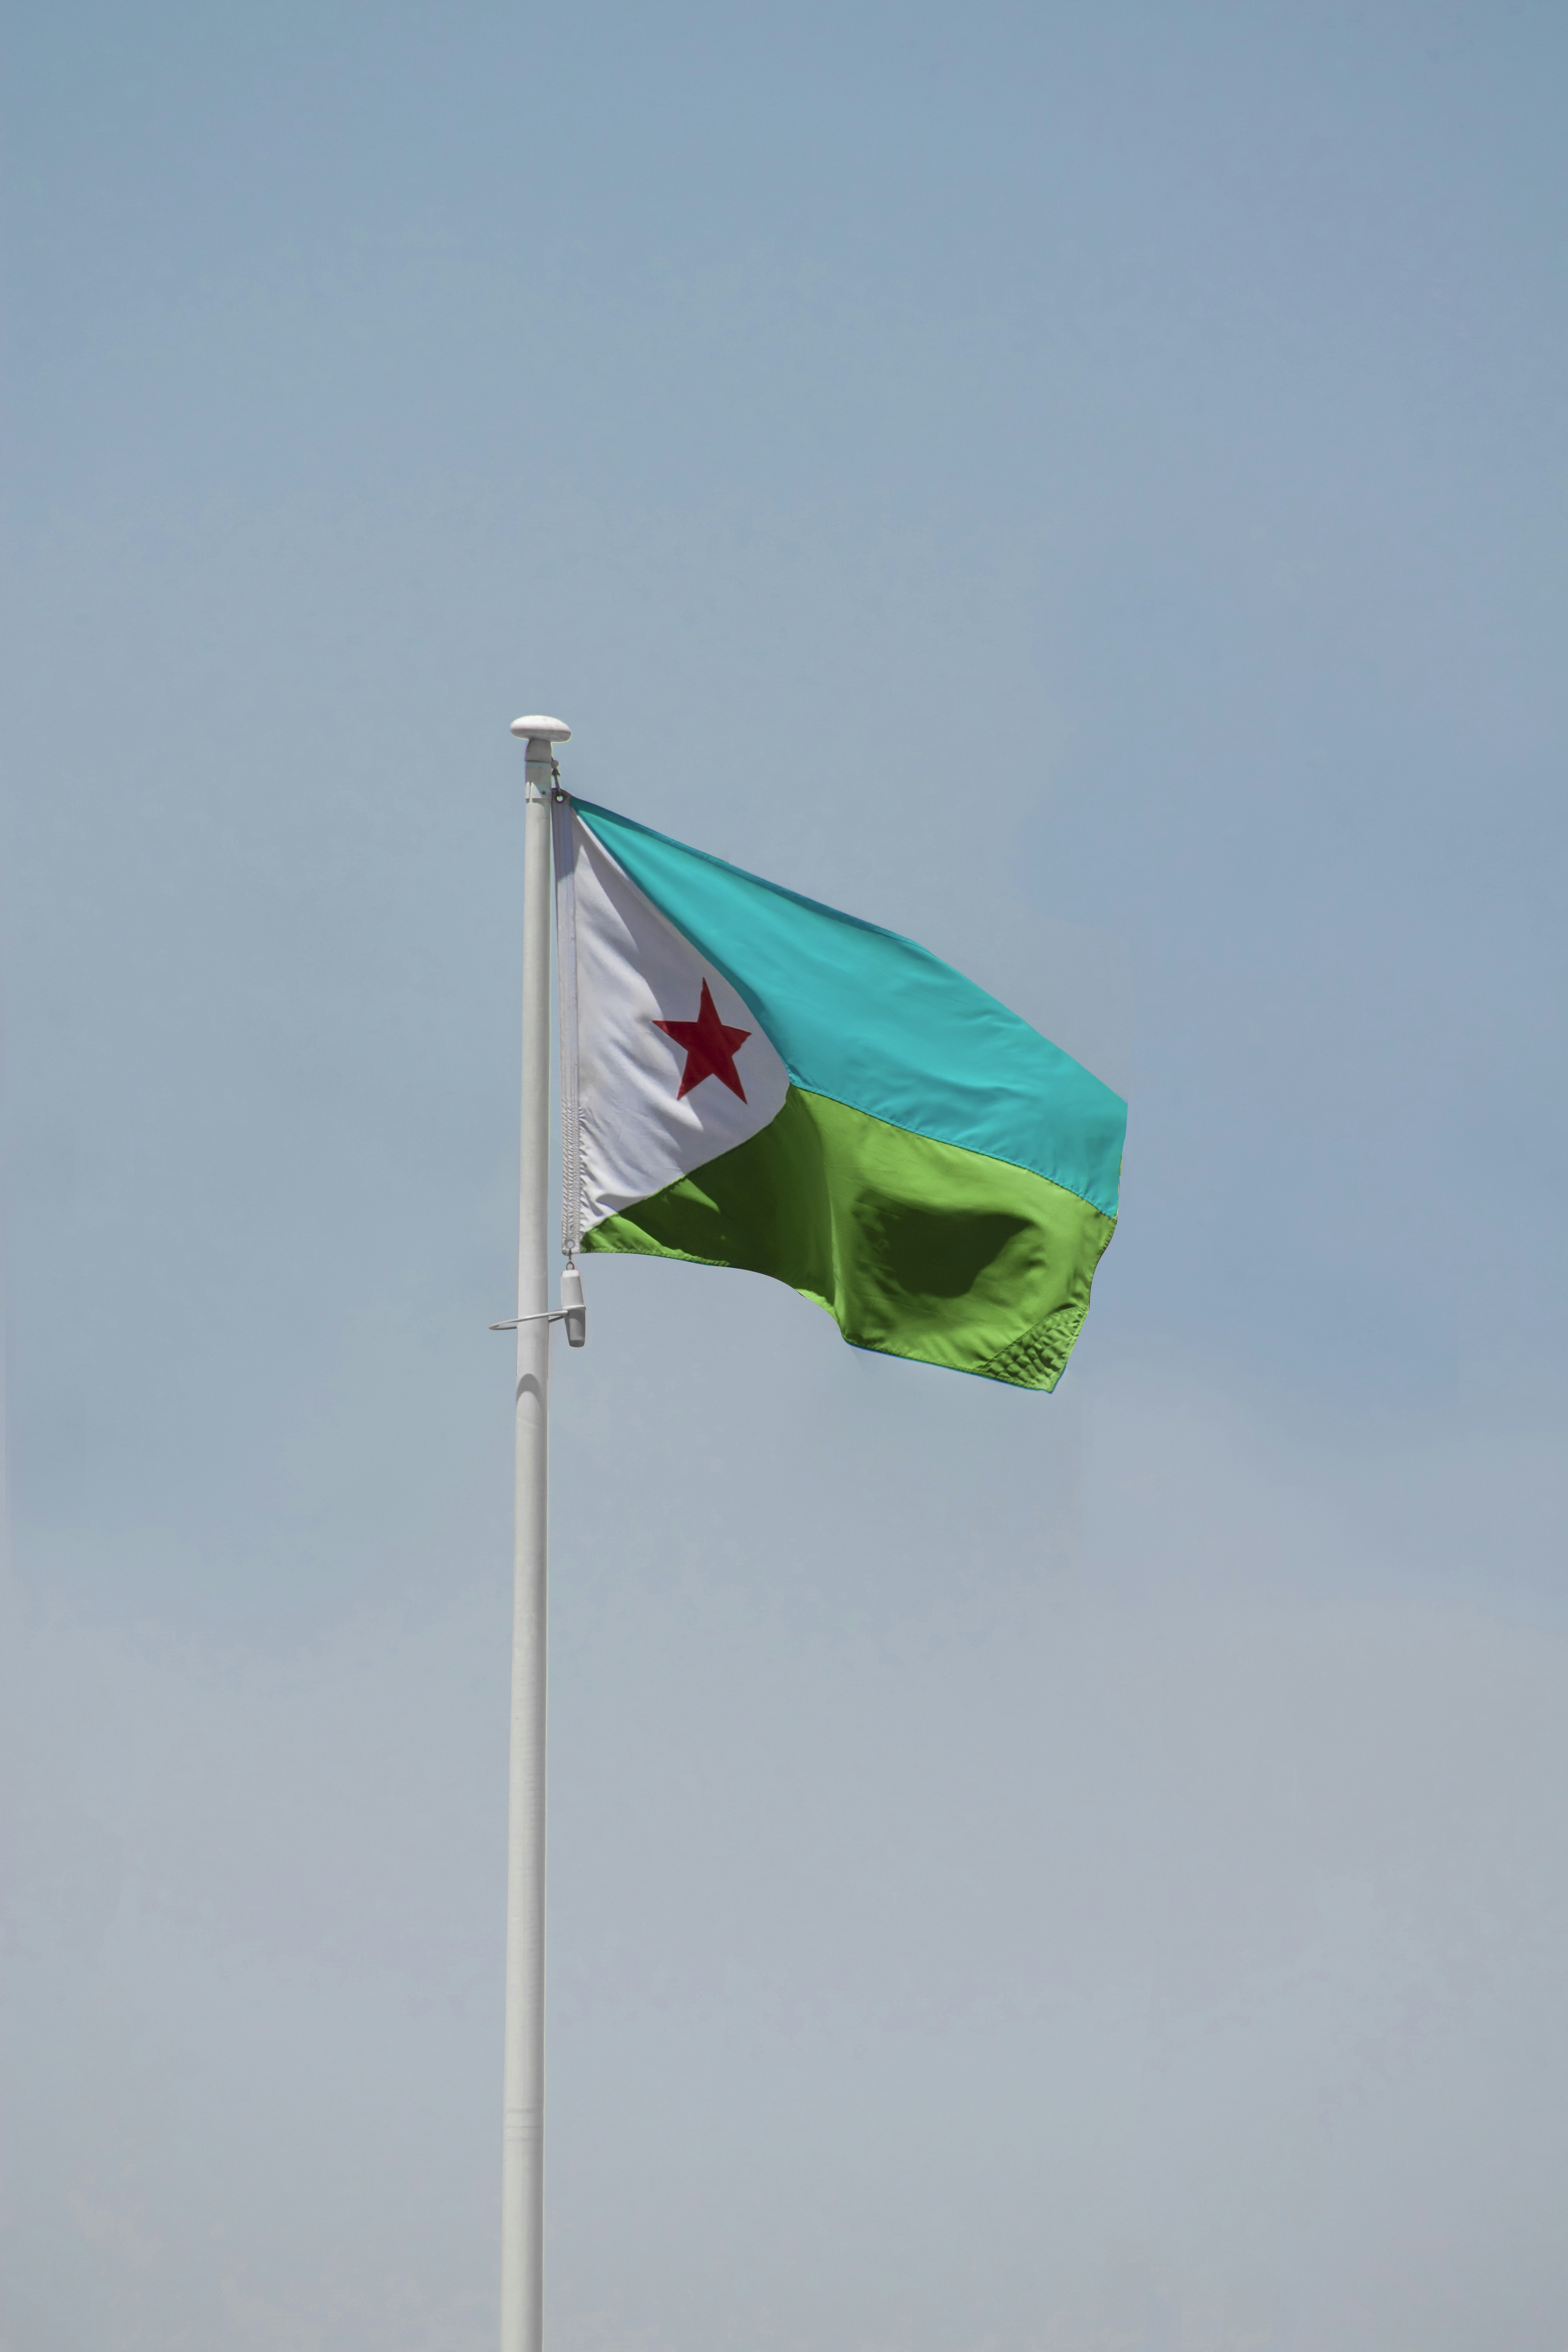 Djibouti National flag